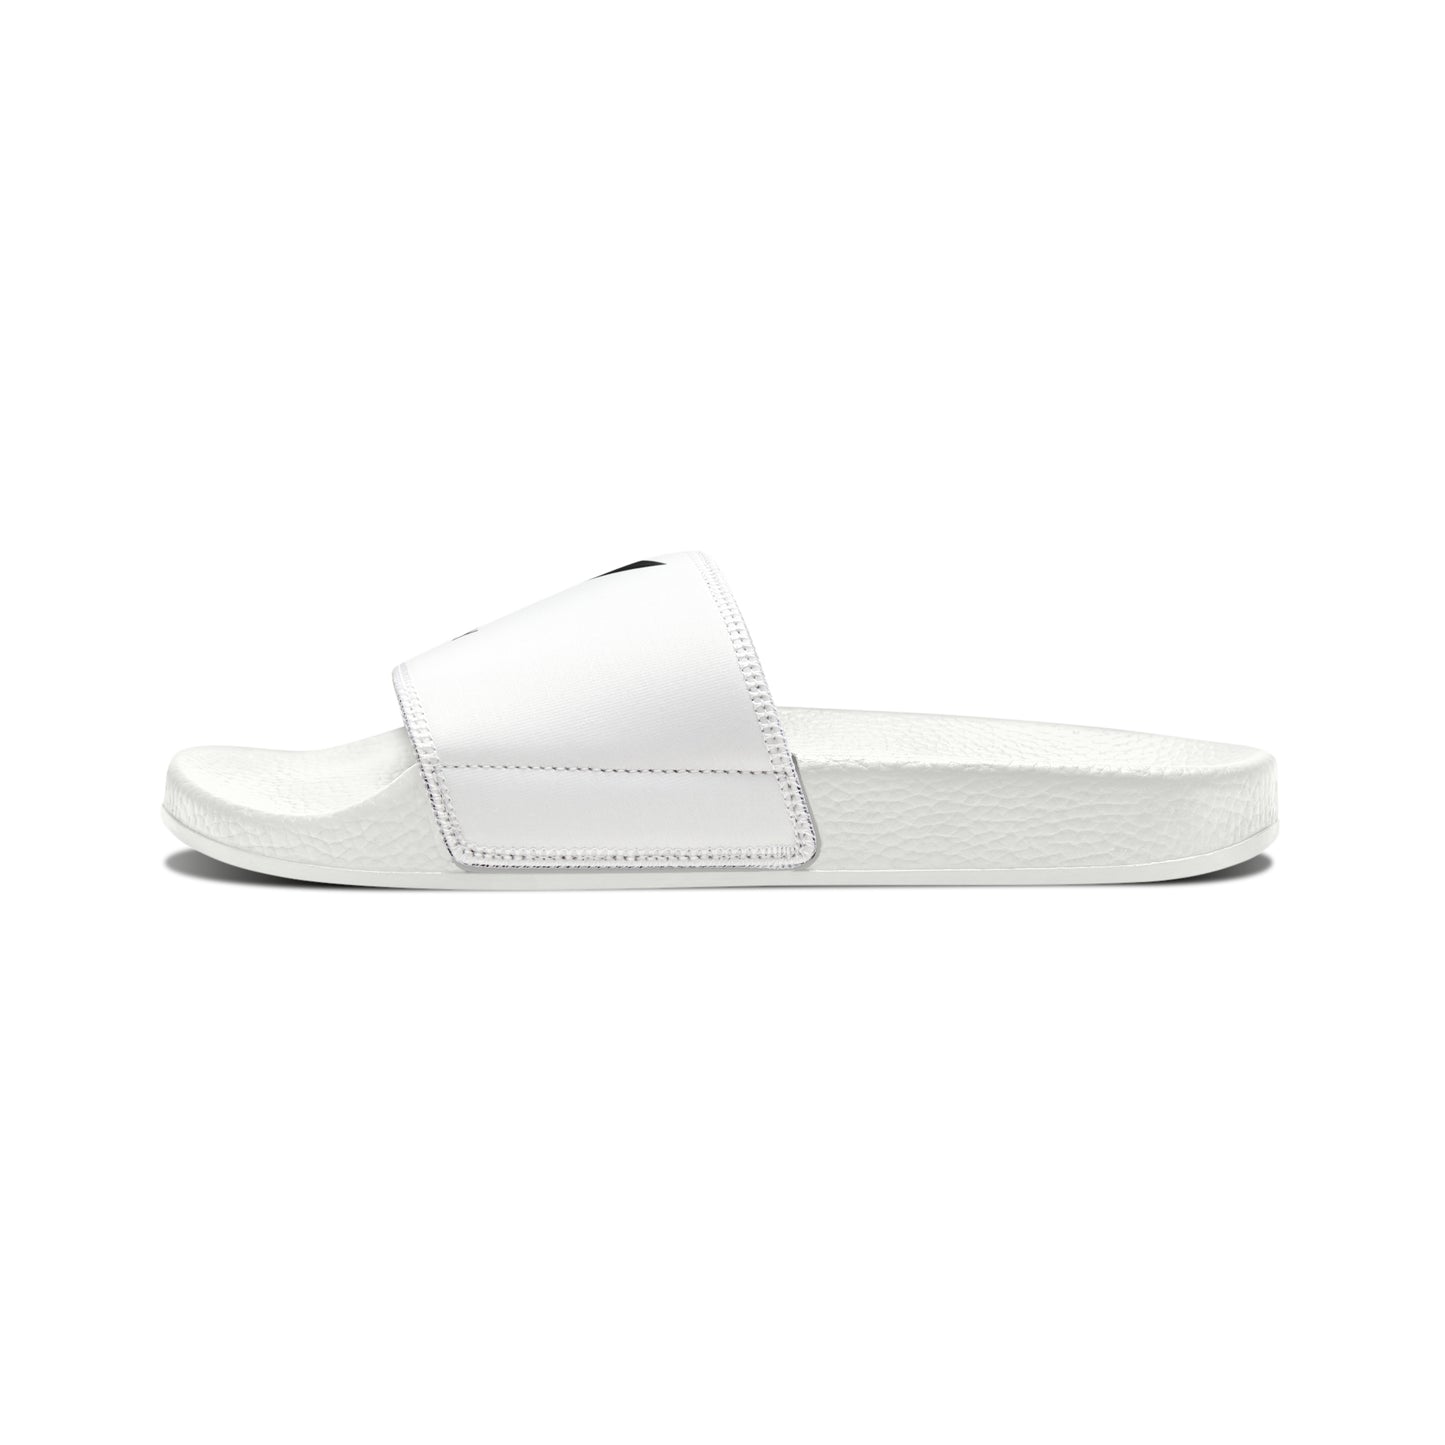 Fold&FlyCo Men's PU Slide Sandals